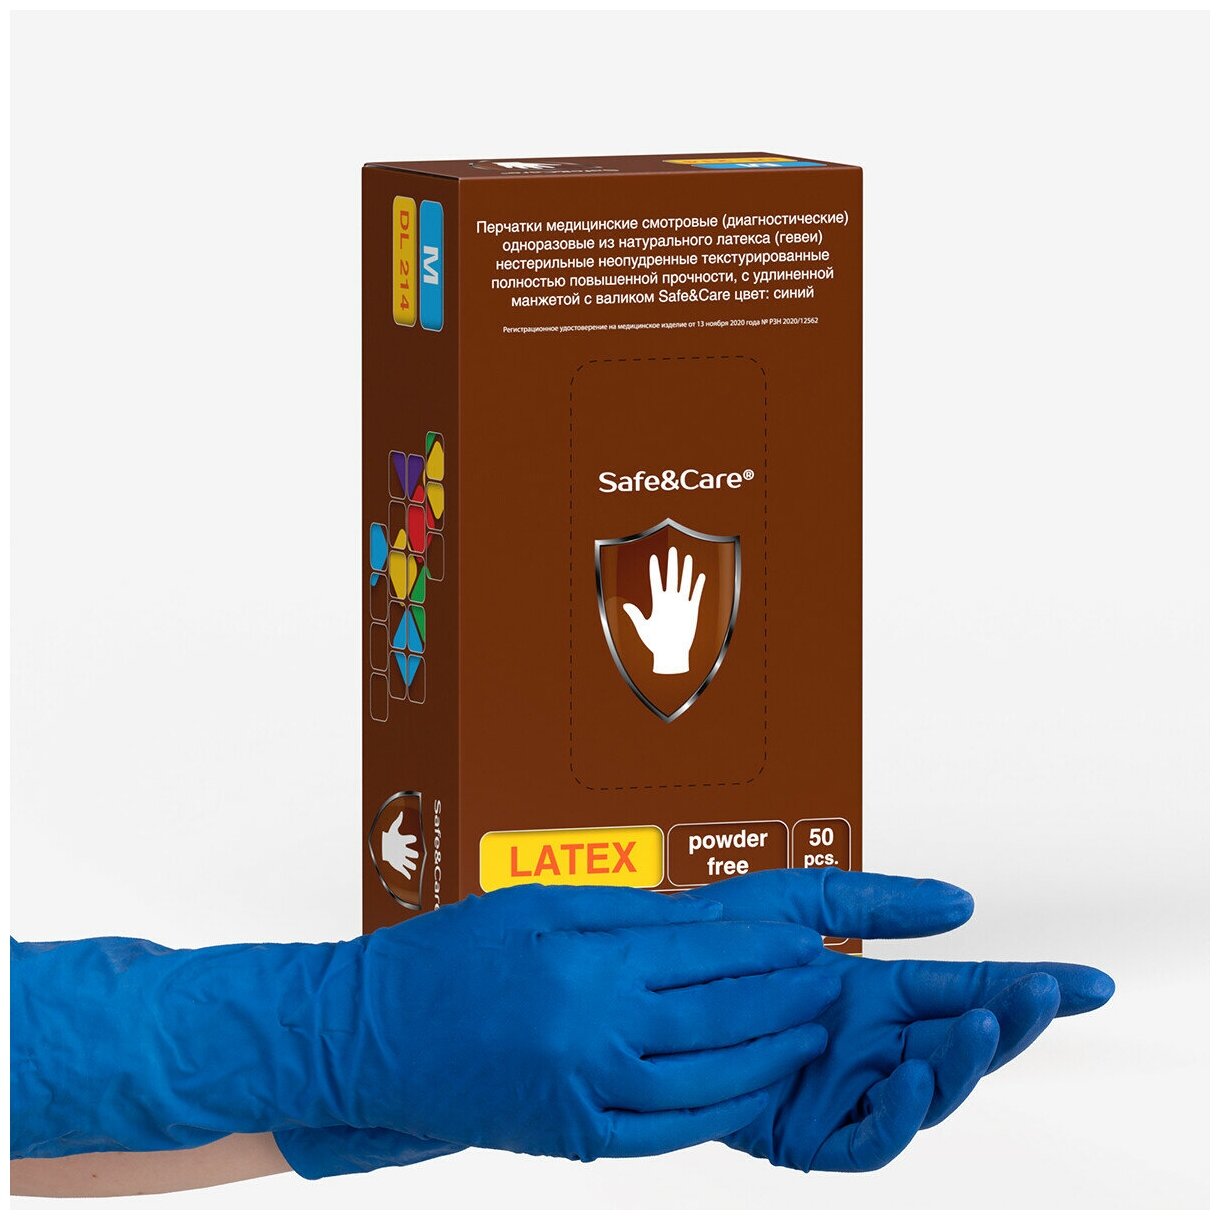 Перчатки латексные сверхпрочные High Risk Safe&Care DL 214 16 г. латекса цвет: синий 50 шт. (25 пар) двукратного хлорирования